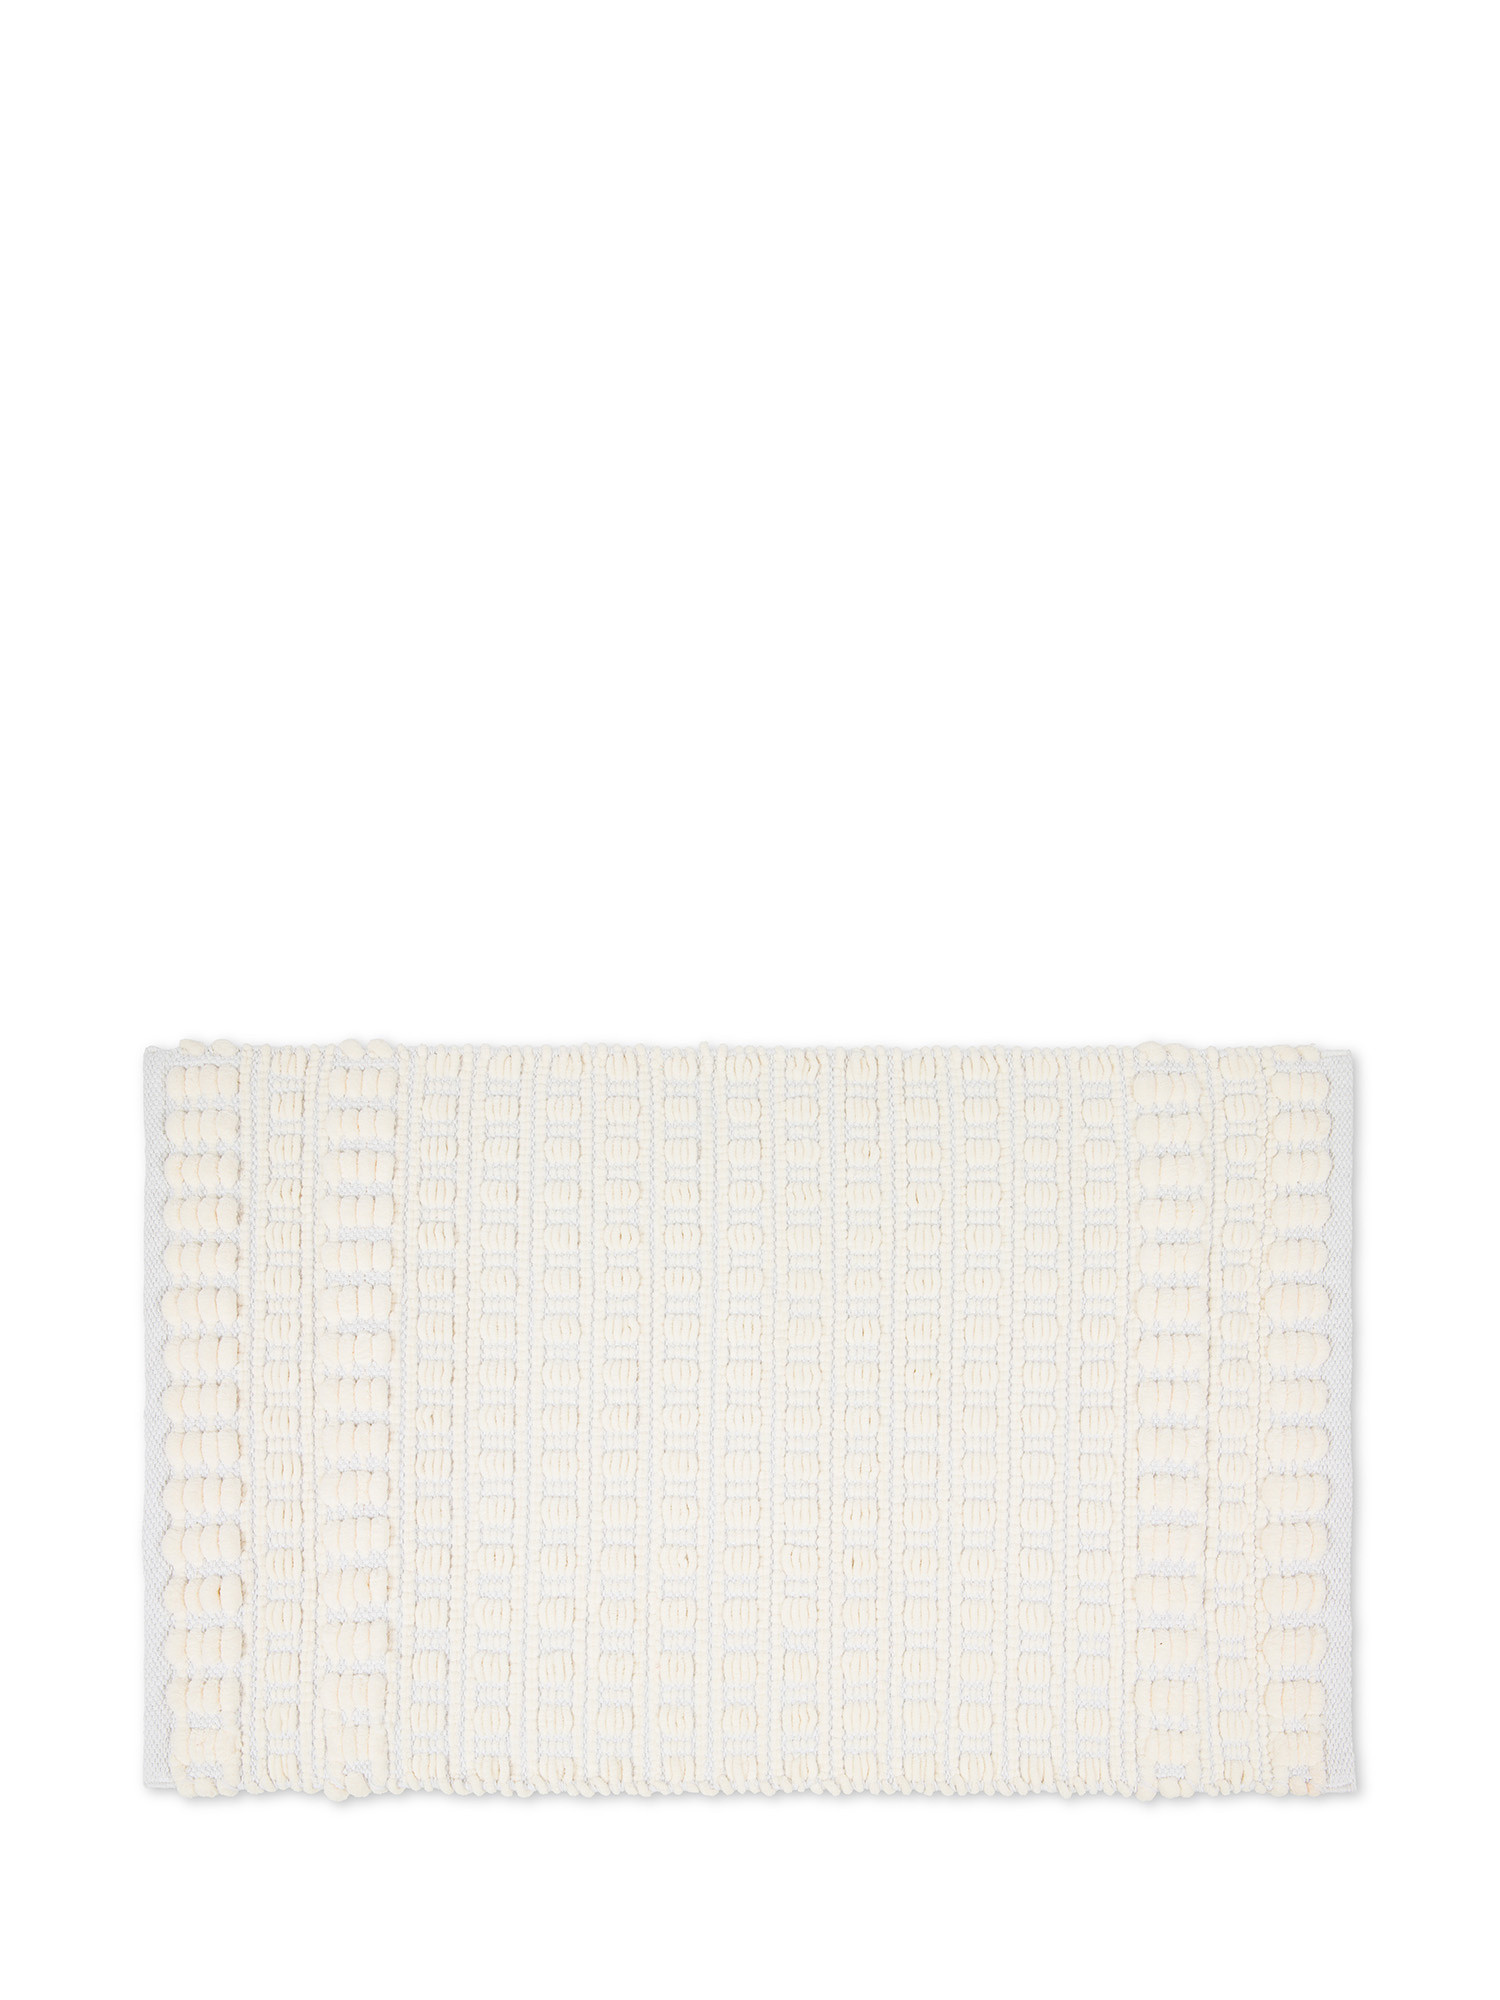 Tappeto bagno in cotone battuto e ciniglia, Bianco, large image number 0